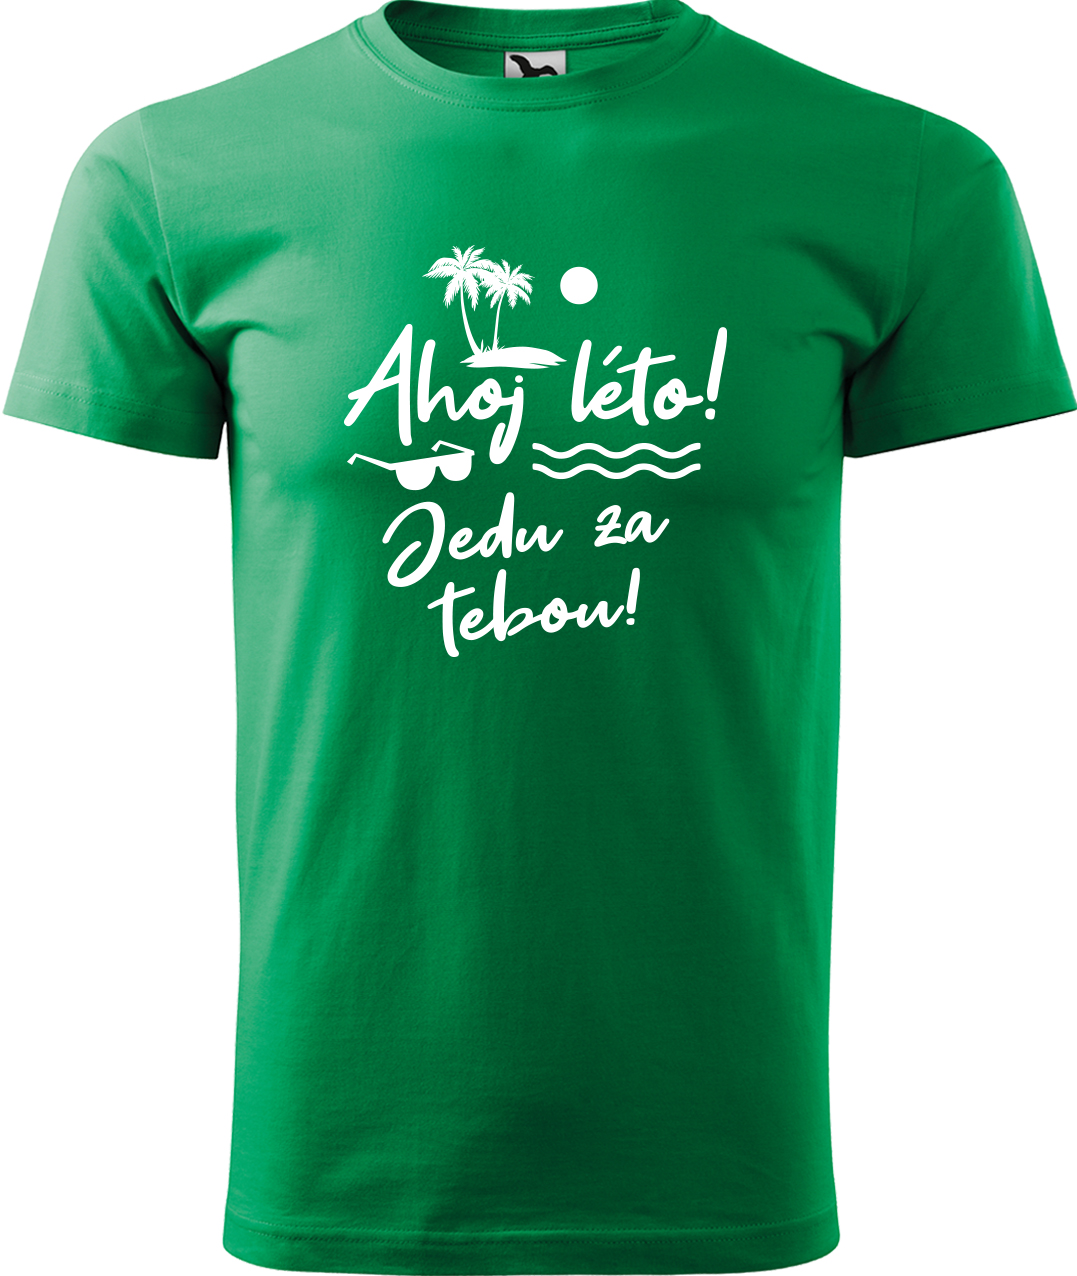 Pánské cestovatelské tričko - Ahoj léto! Jedu za tebou! Velikost: XL, Barva: Středně zelená (16), Střih: pánský